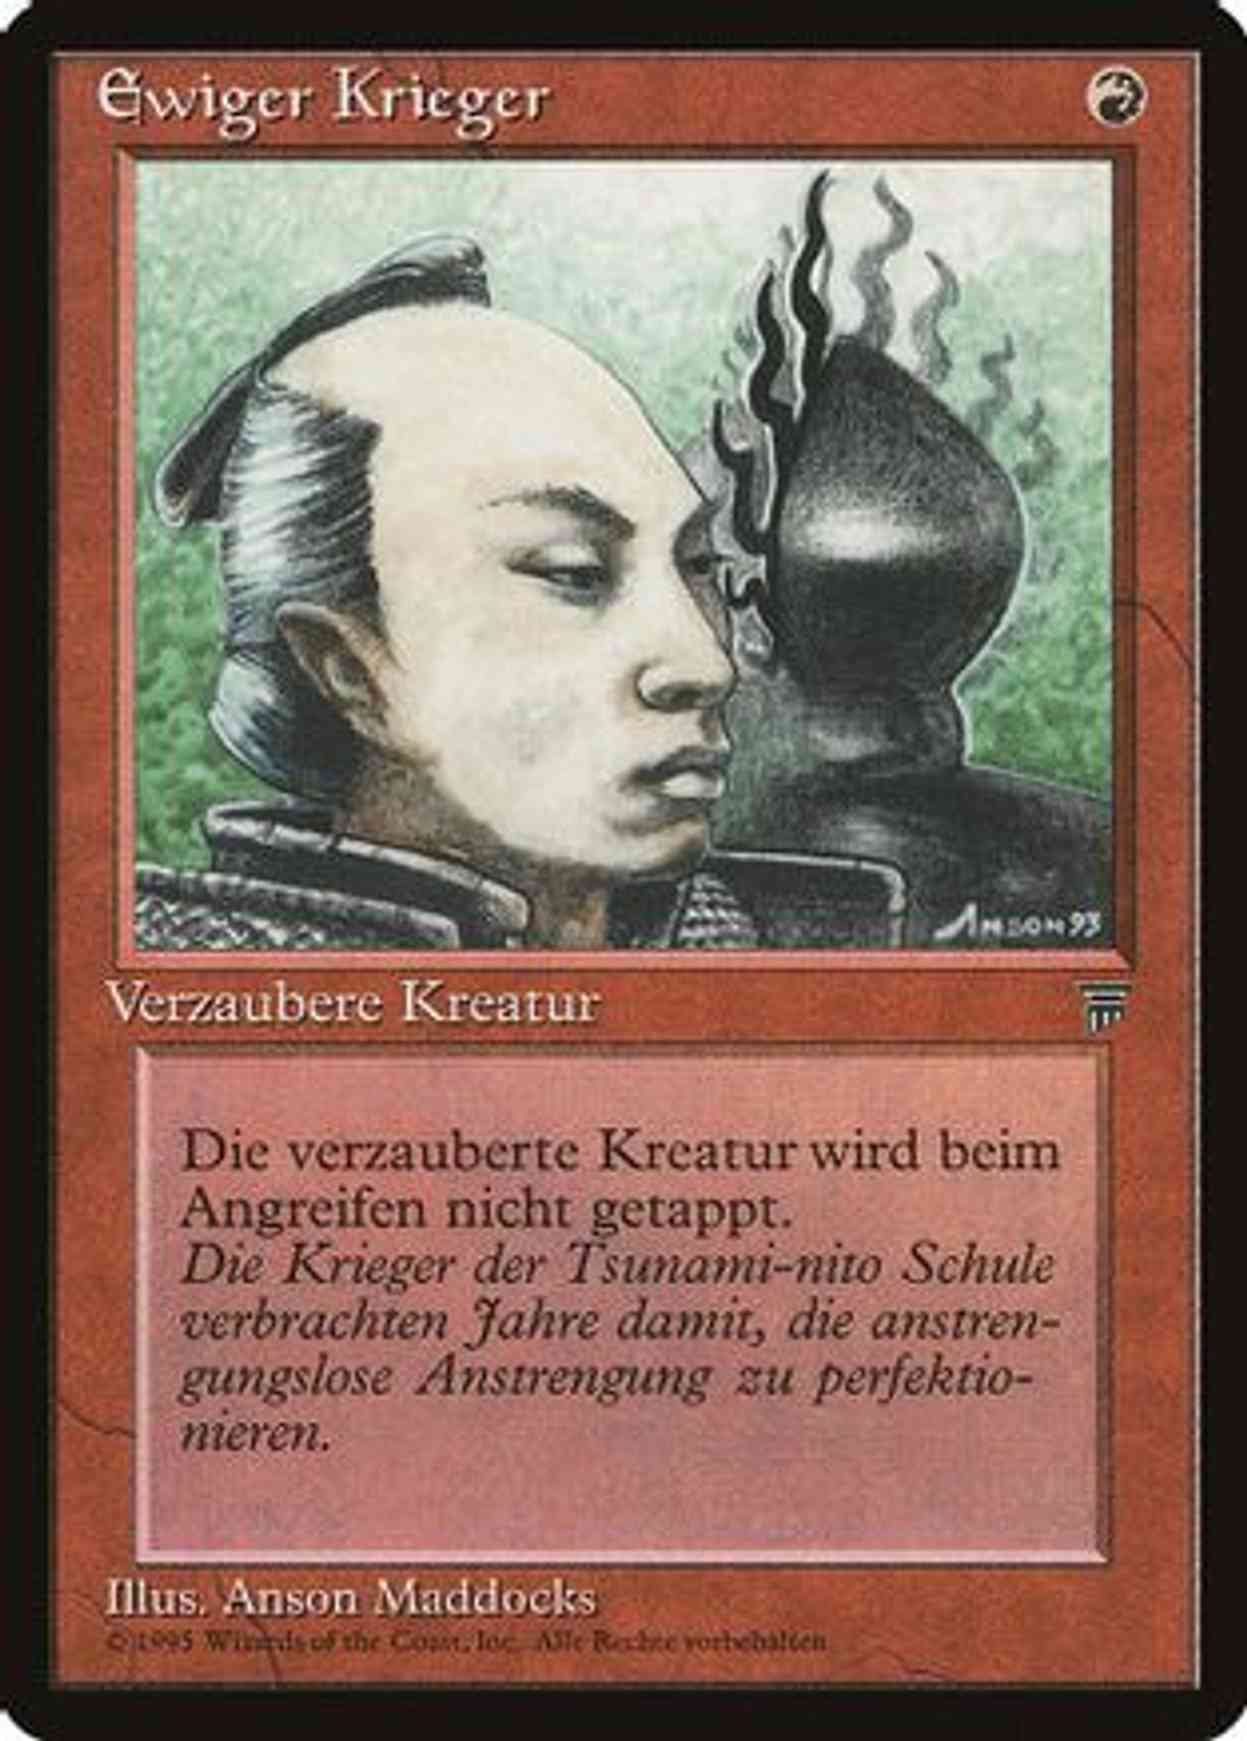 Eternal Warrior (German) - "Ewiger Krieger" magic card front